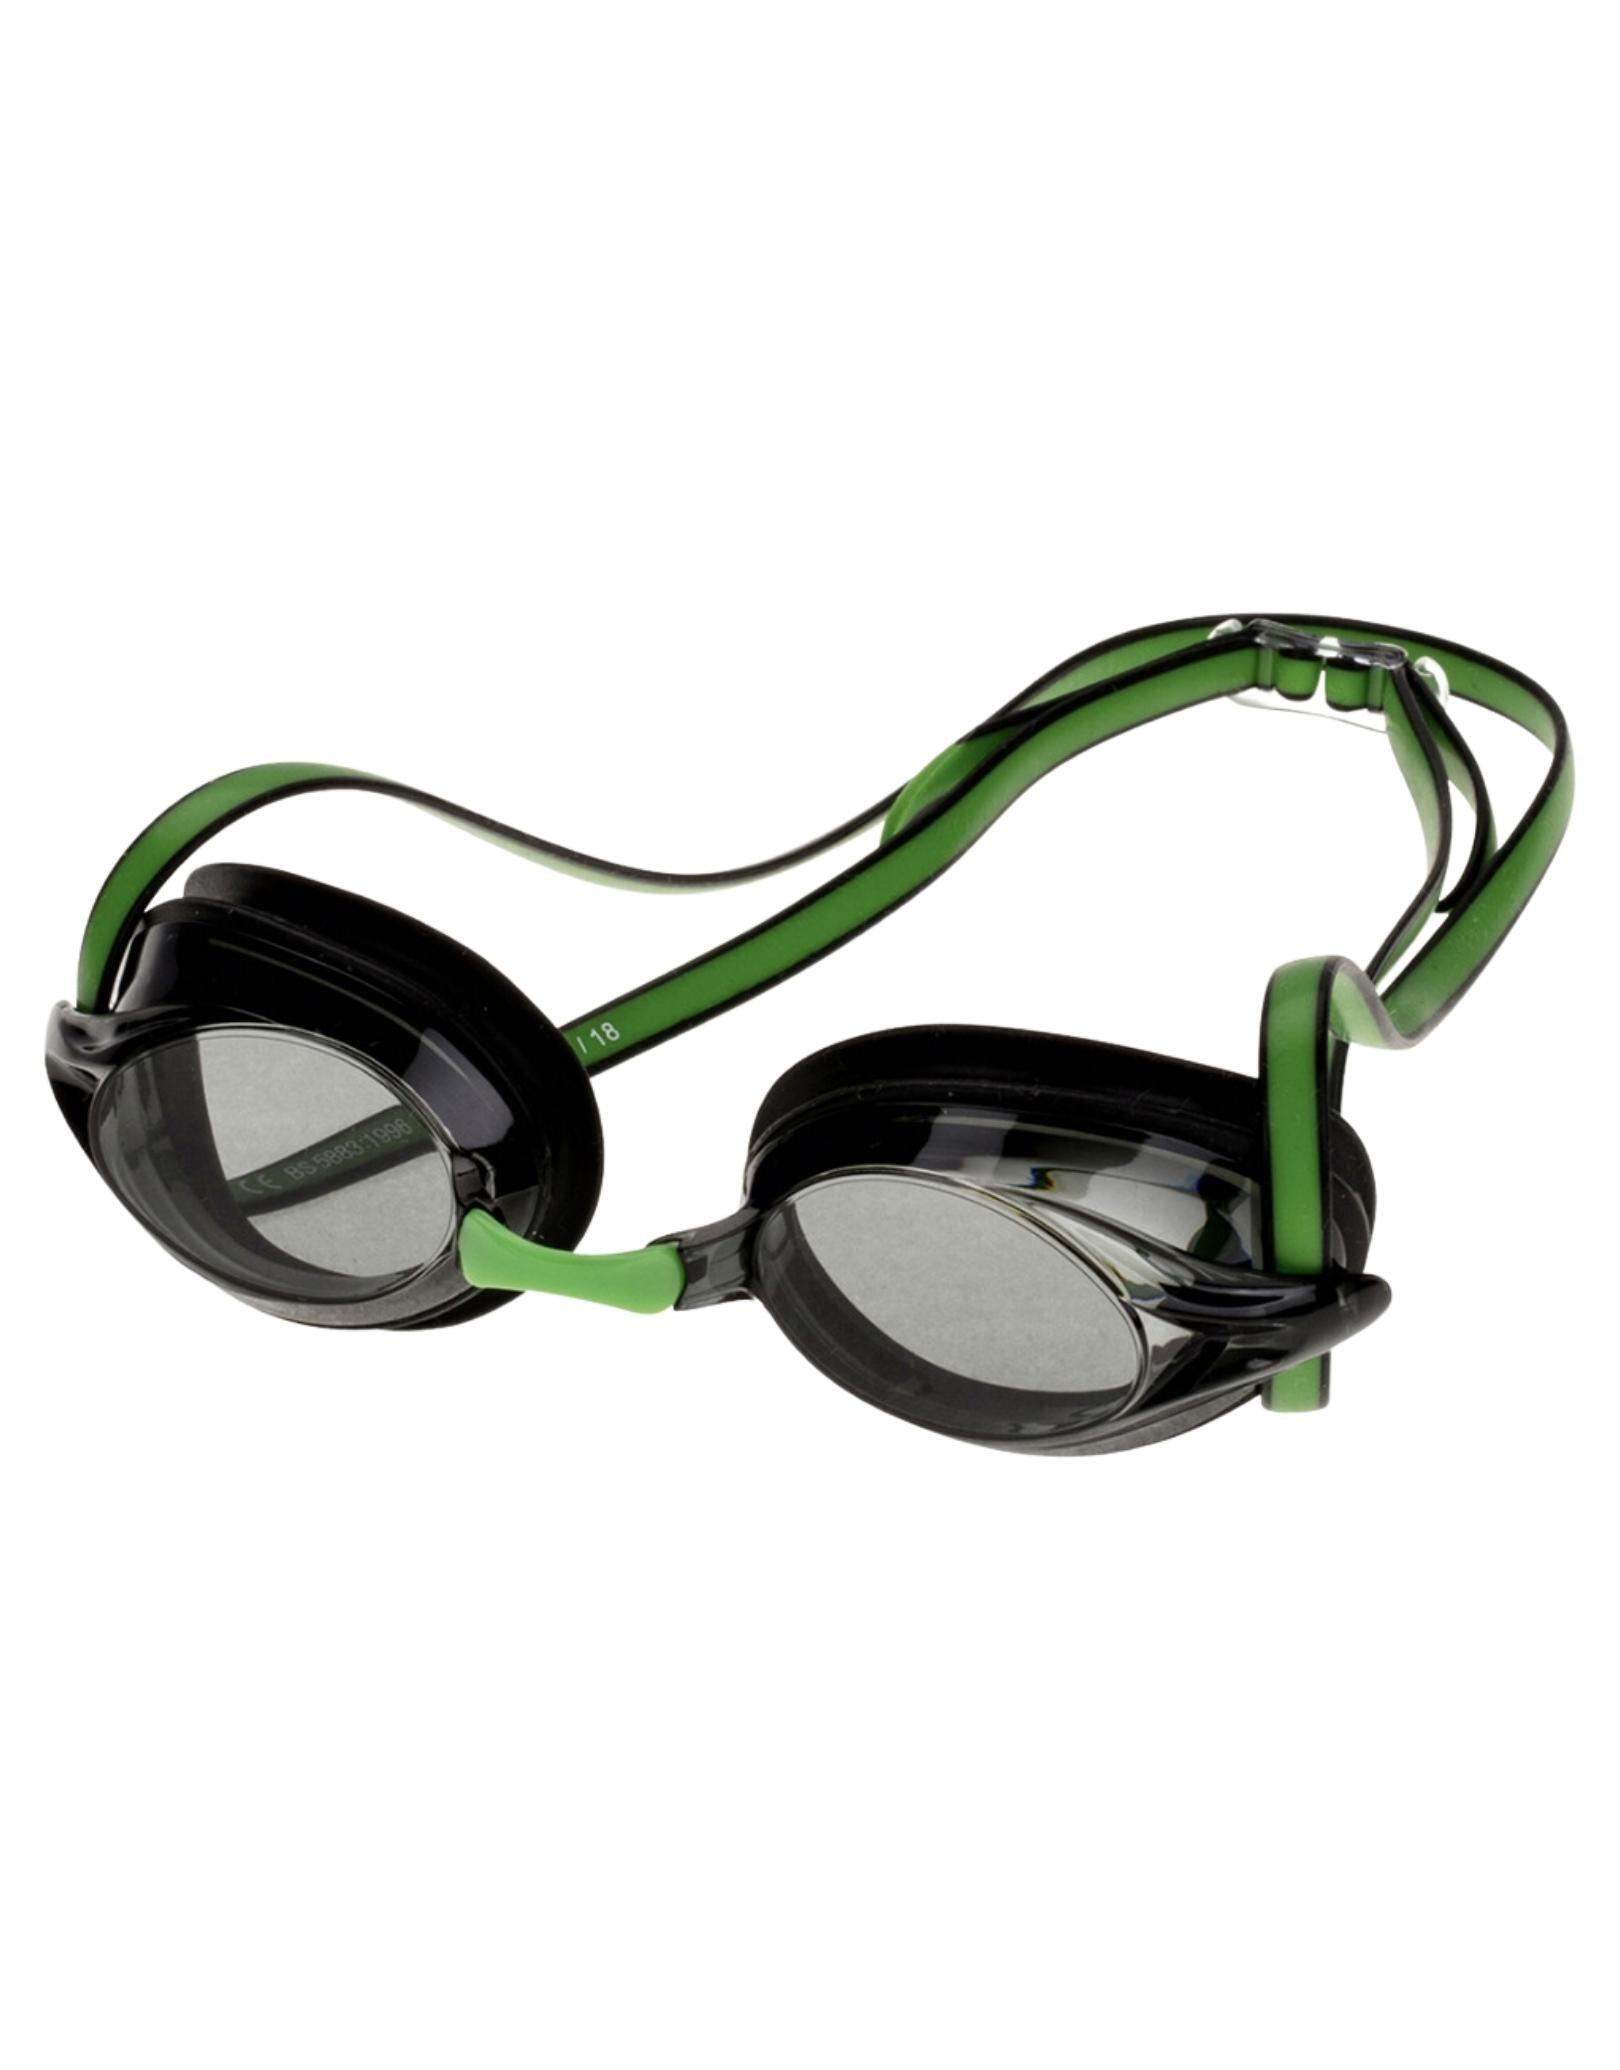 AQUAFEEL Aquafeel Arrow Adult Swim Goggles